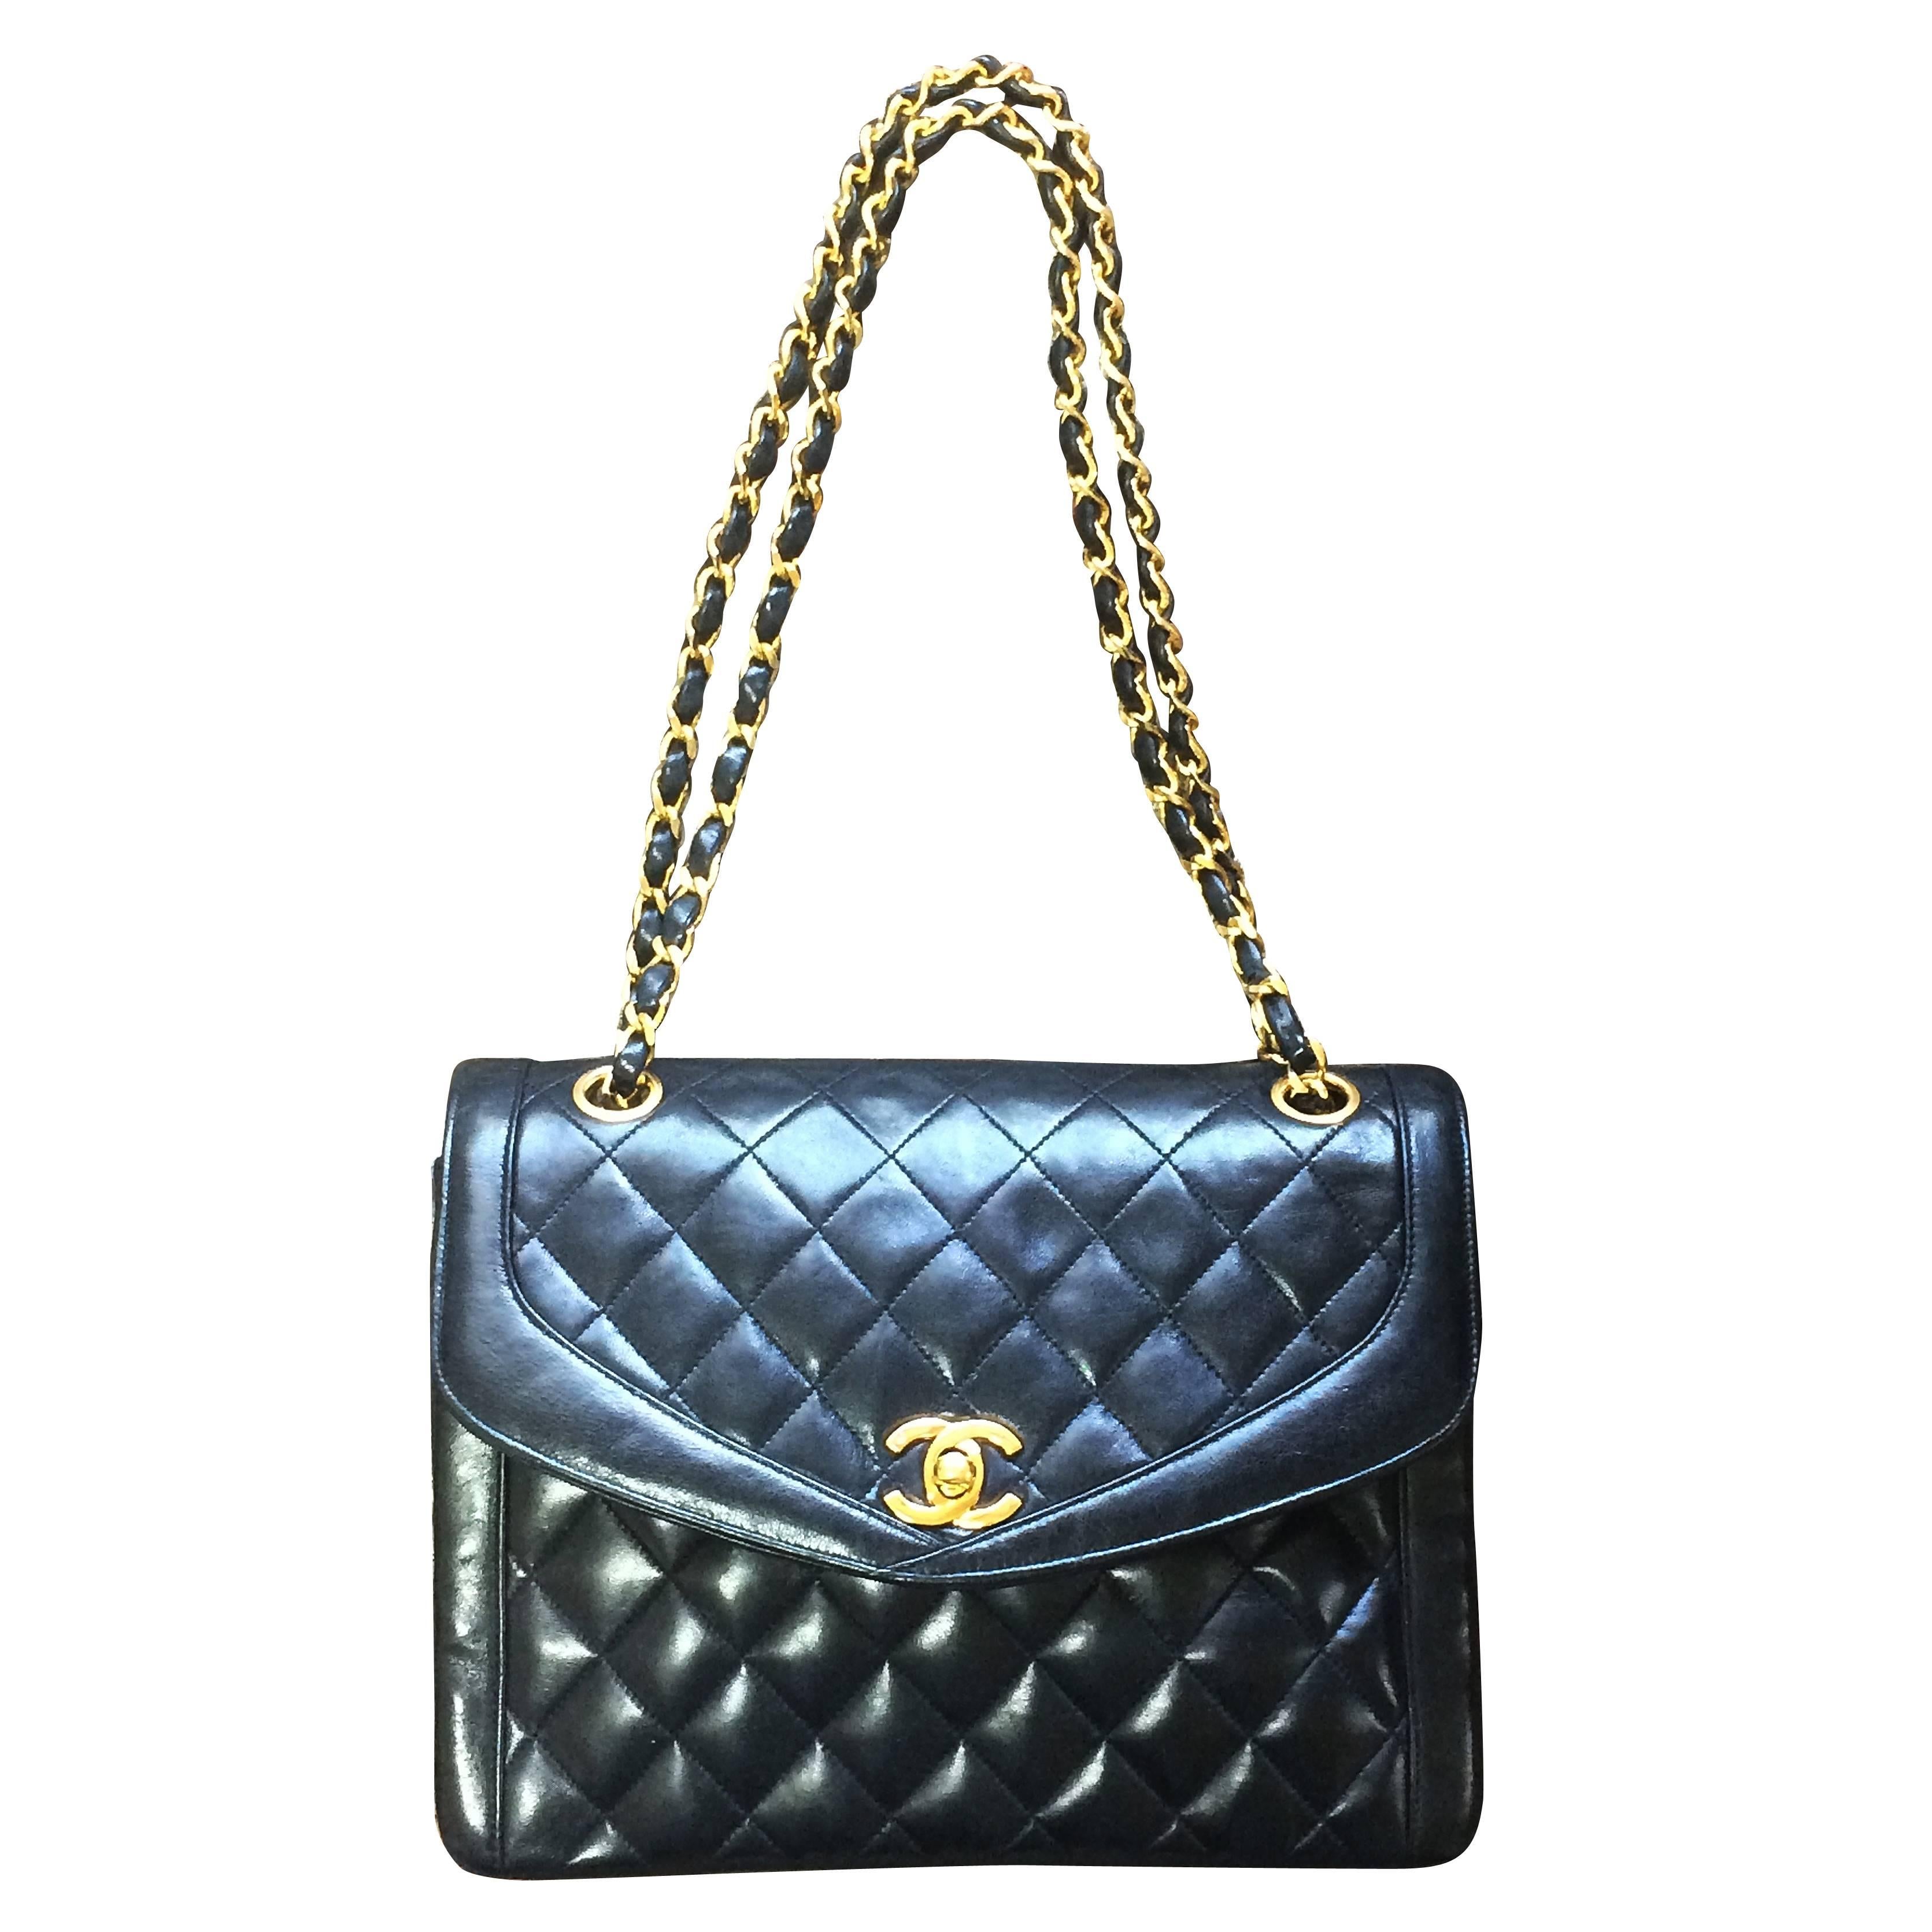 Vintage Chanel black lambskin chain shoulder 2.55 shoulder bag, pentagon flap For Sale